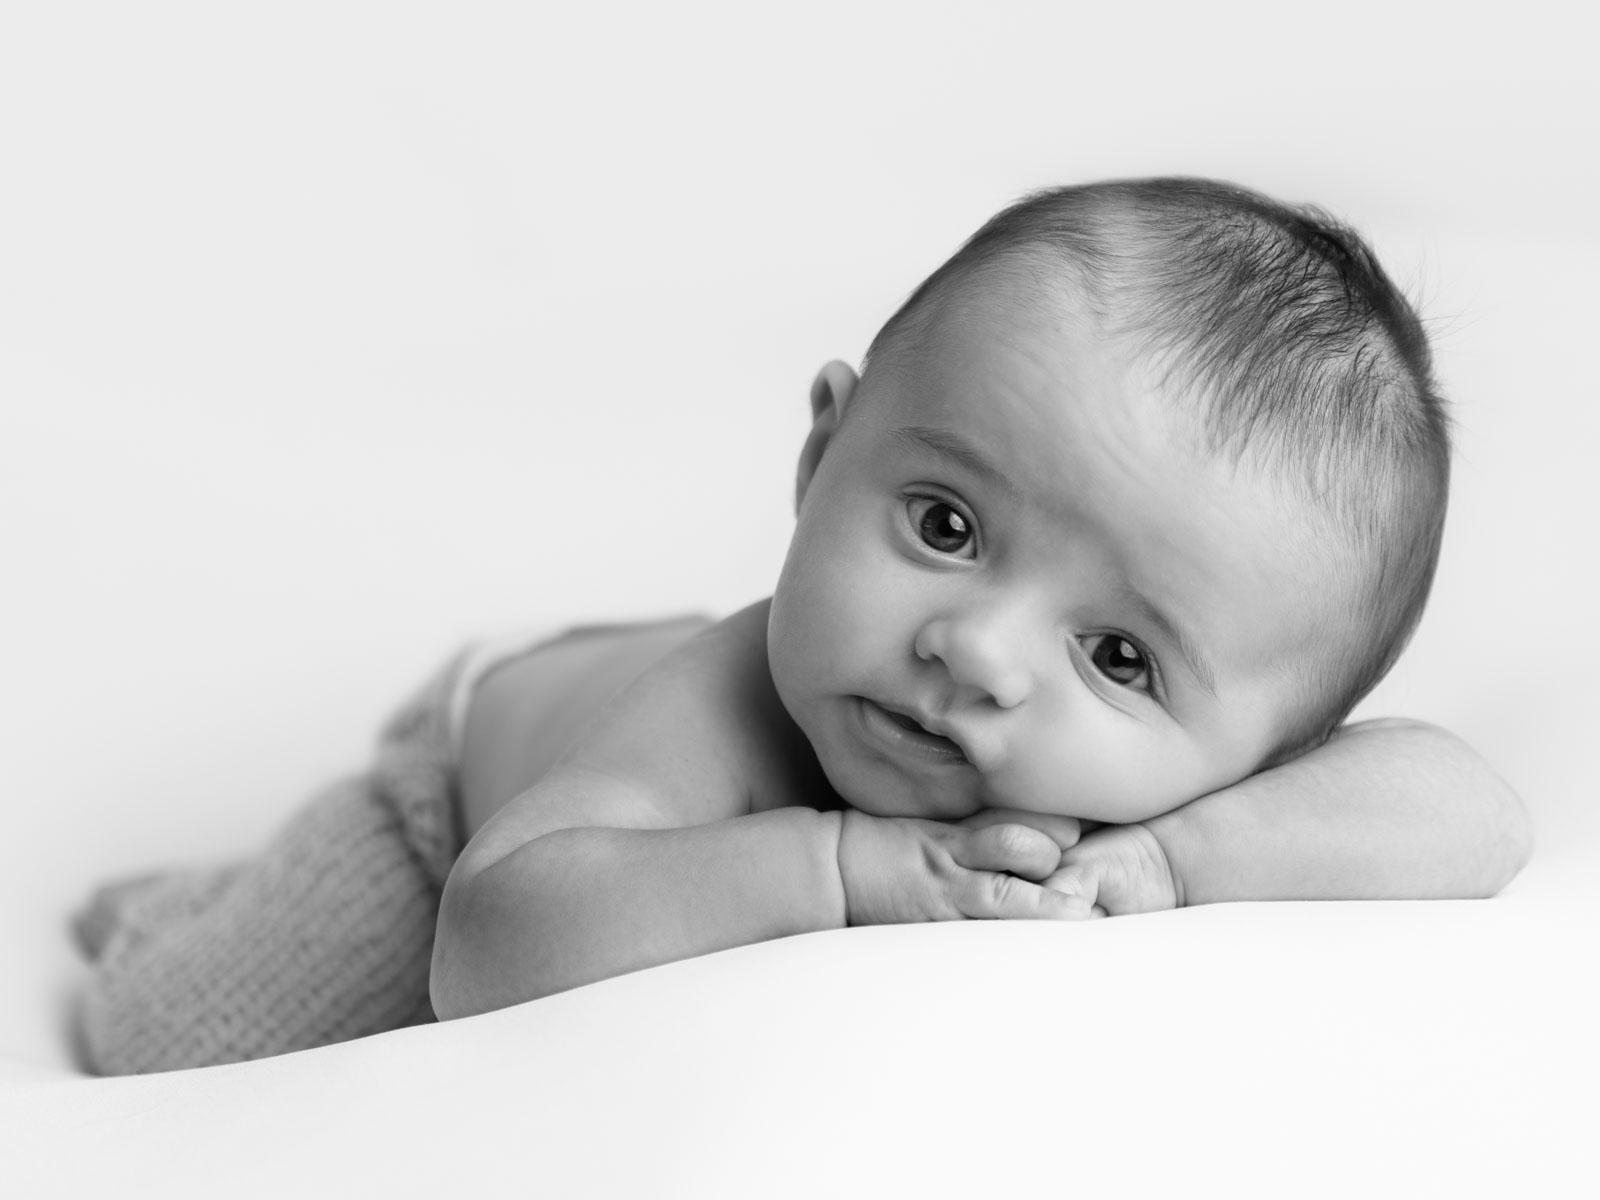 newborn baby awake lying casually in black and white photo